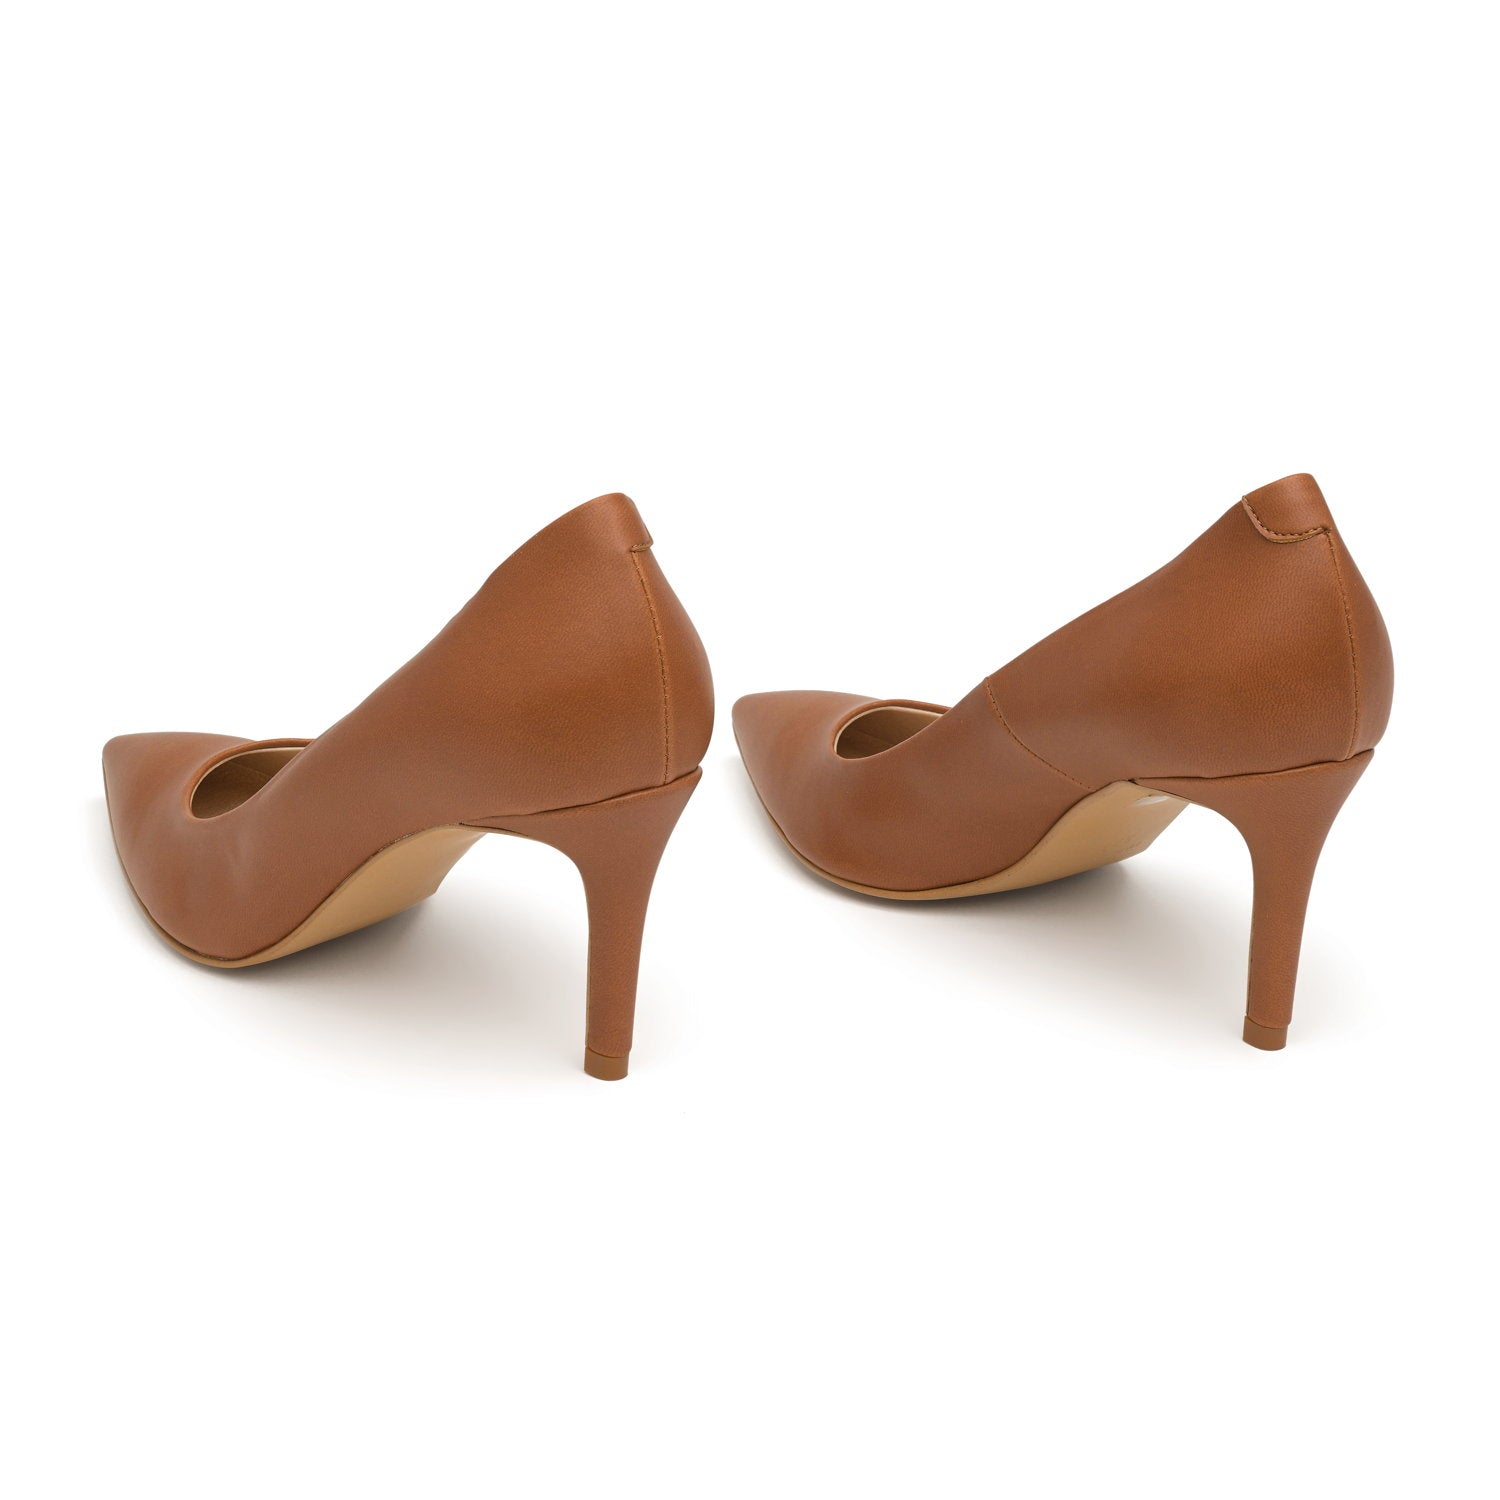 The Brown - vegan 70mm heels